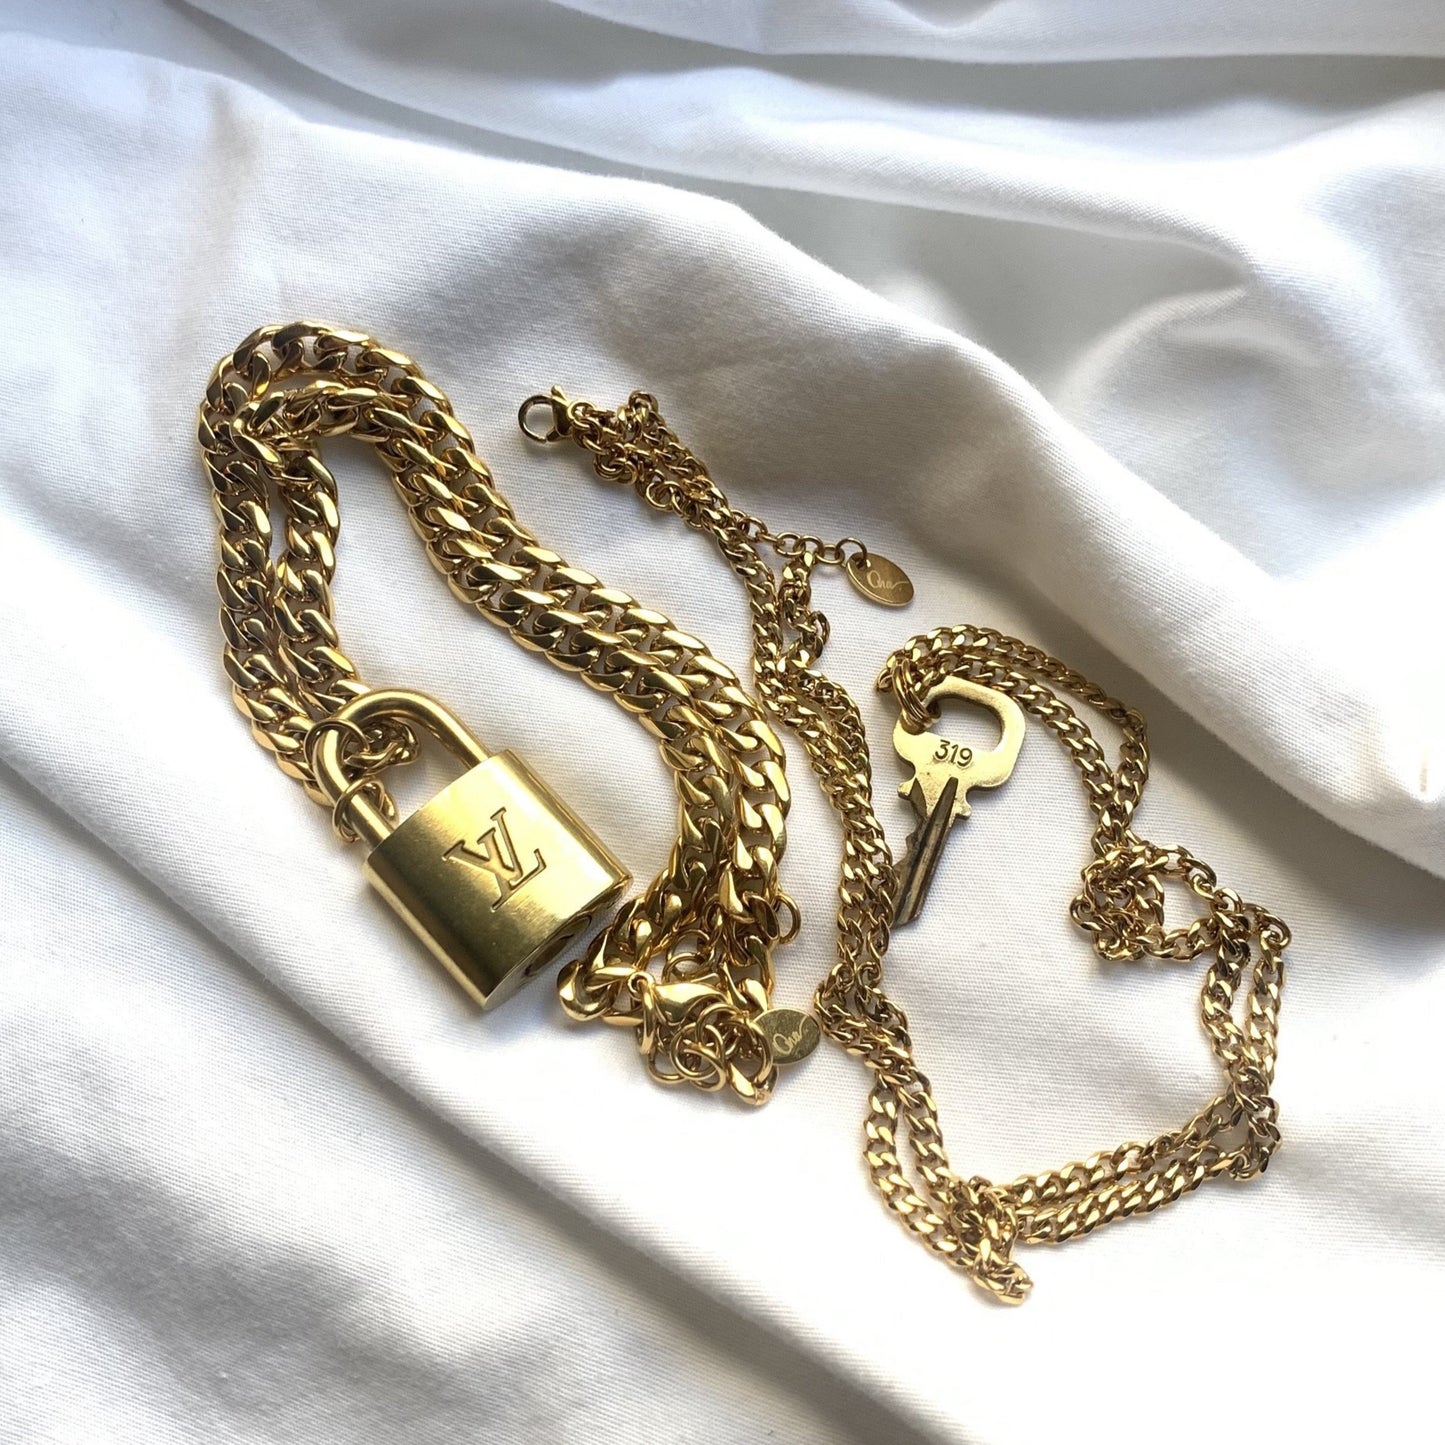 Louis Vuitton Set Lock Cuban Chain Necklace with Key Bracelet For Him